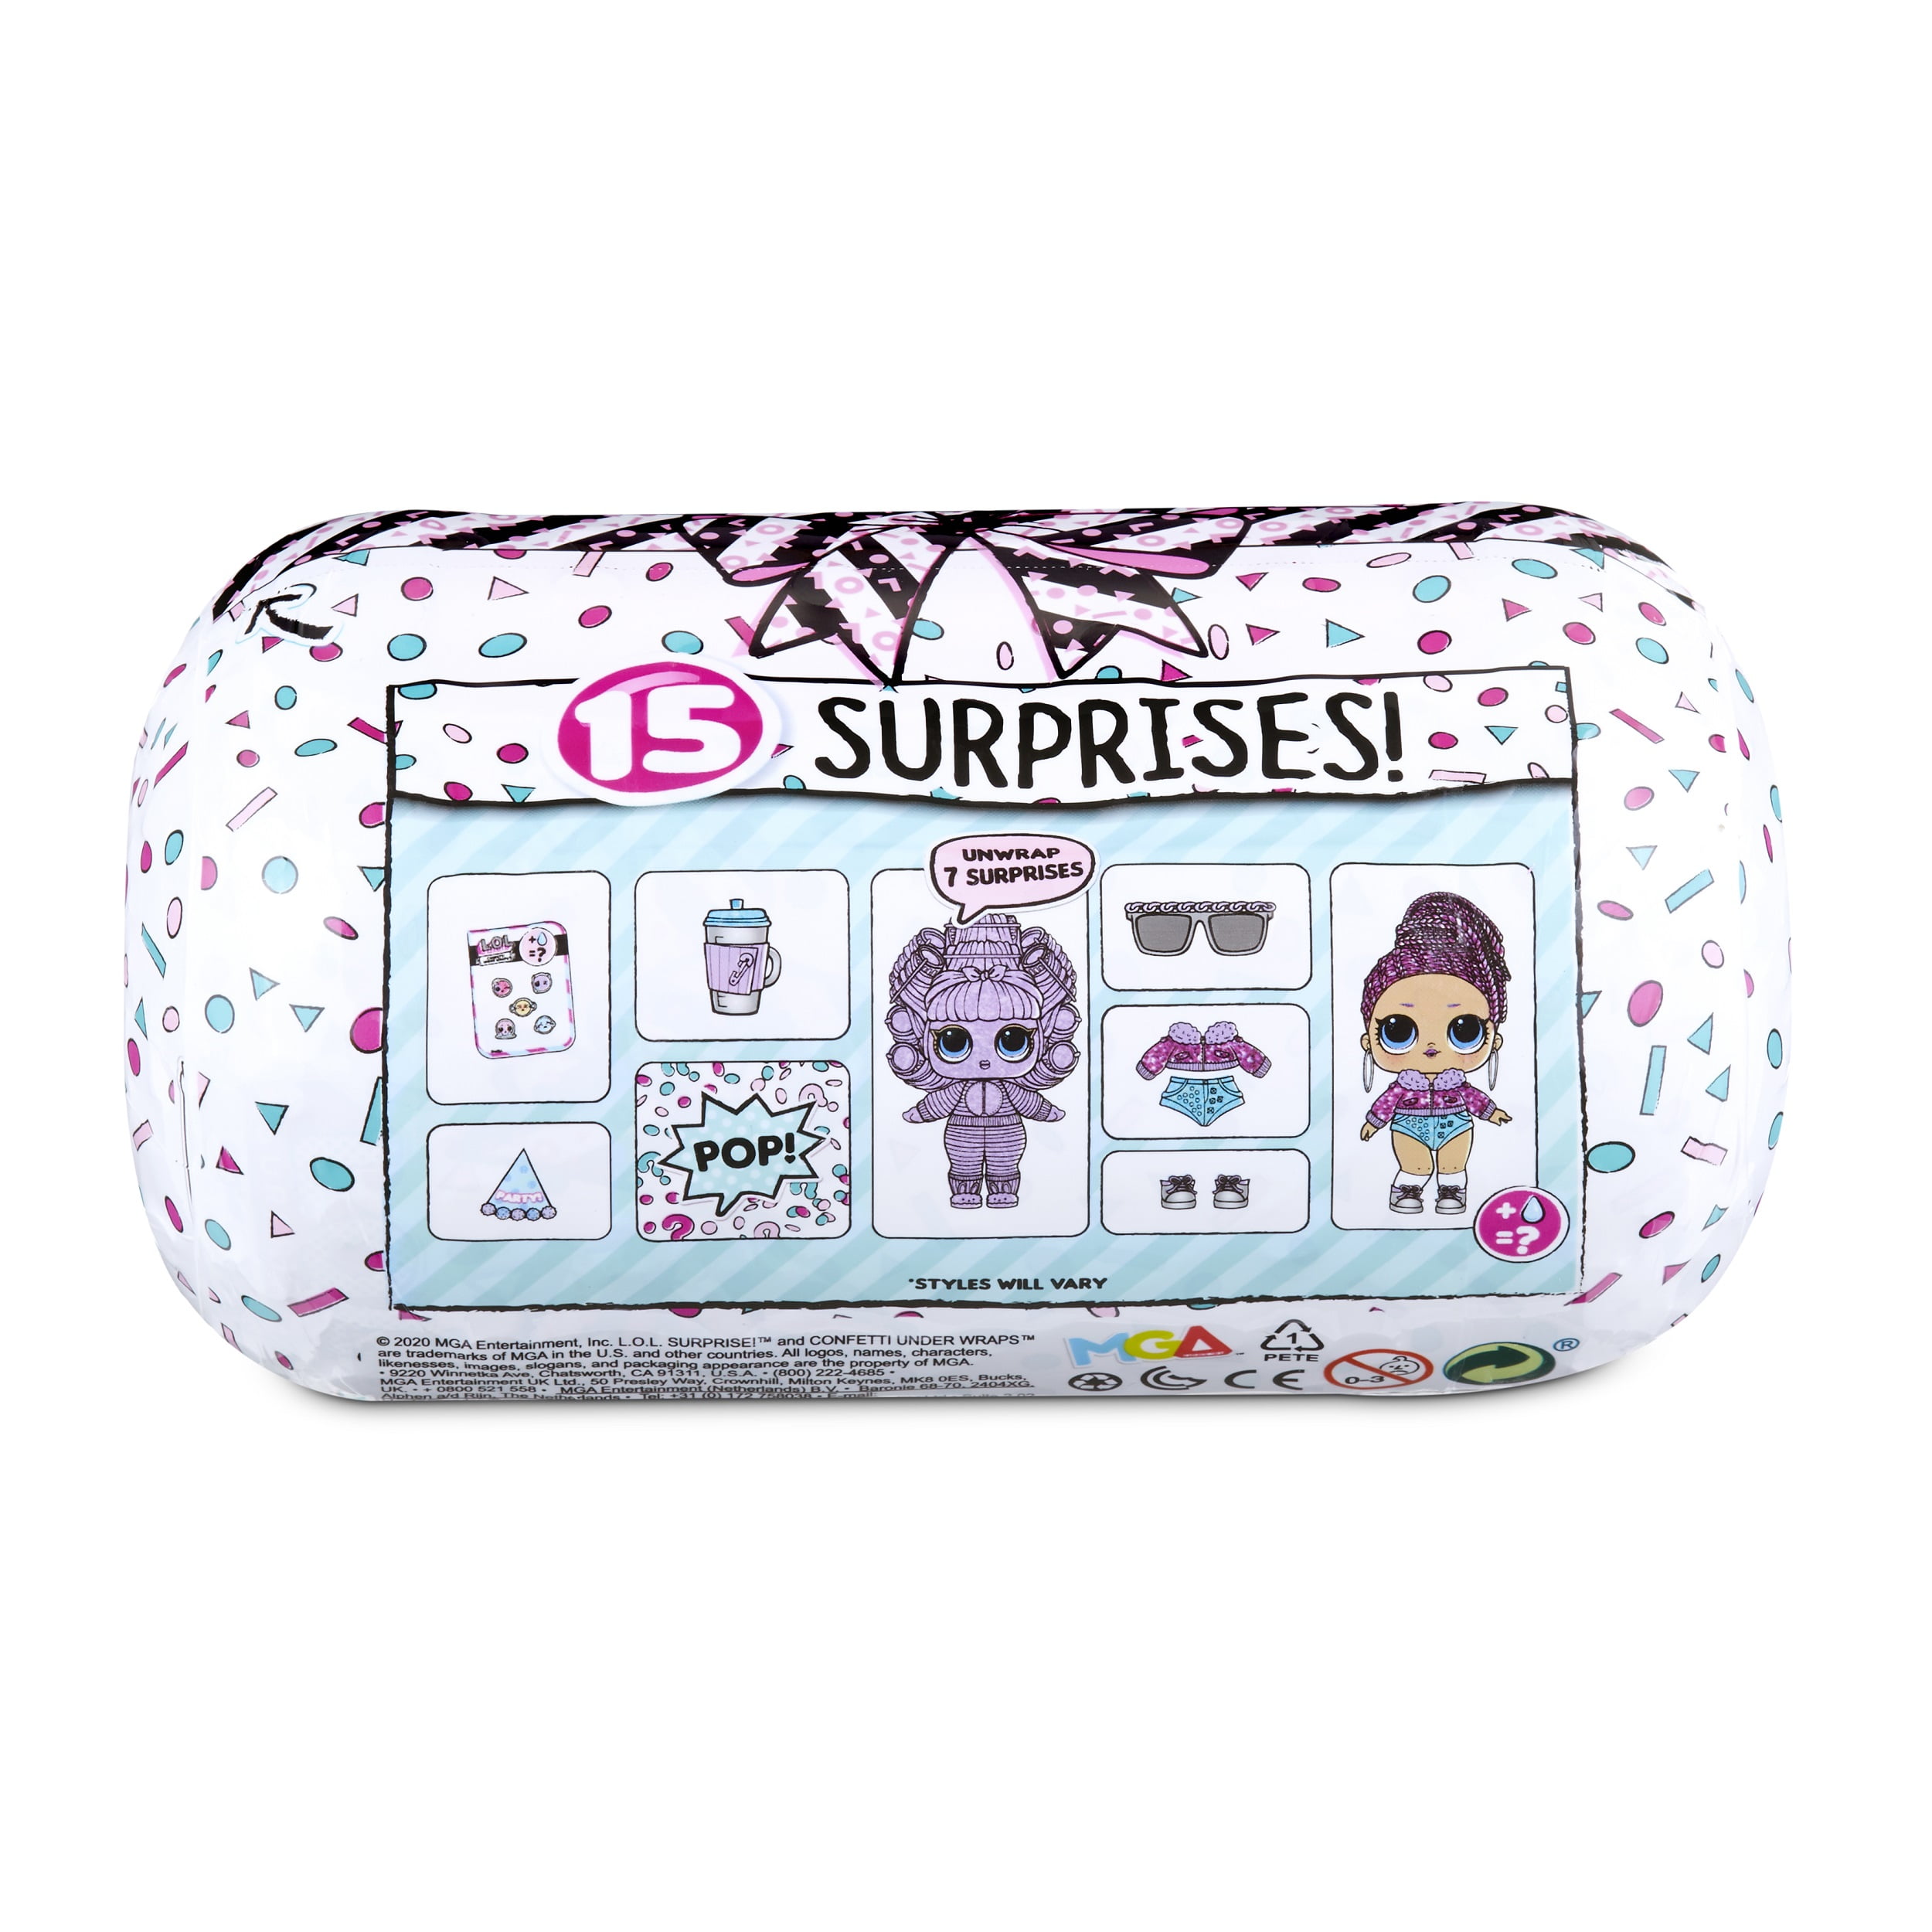 LOL Surprise Confetti Under Wraps Doll With 15 Surprises A25 for sale online 